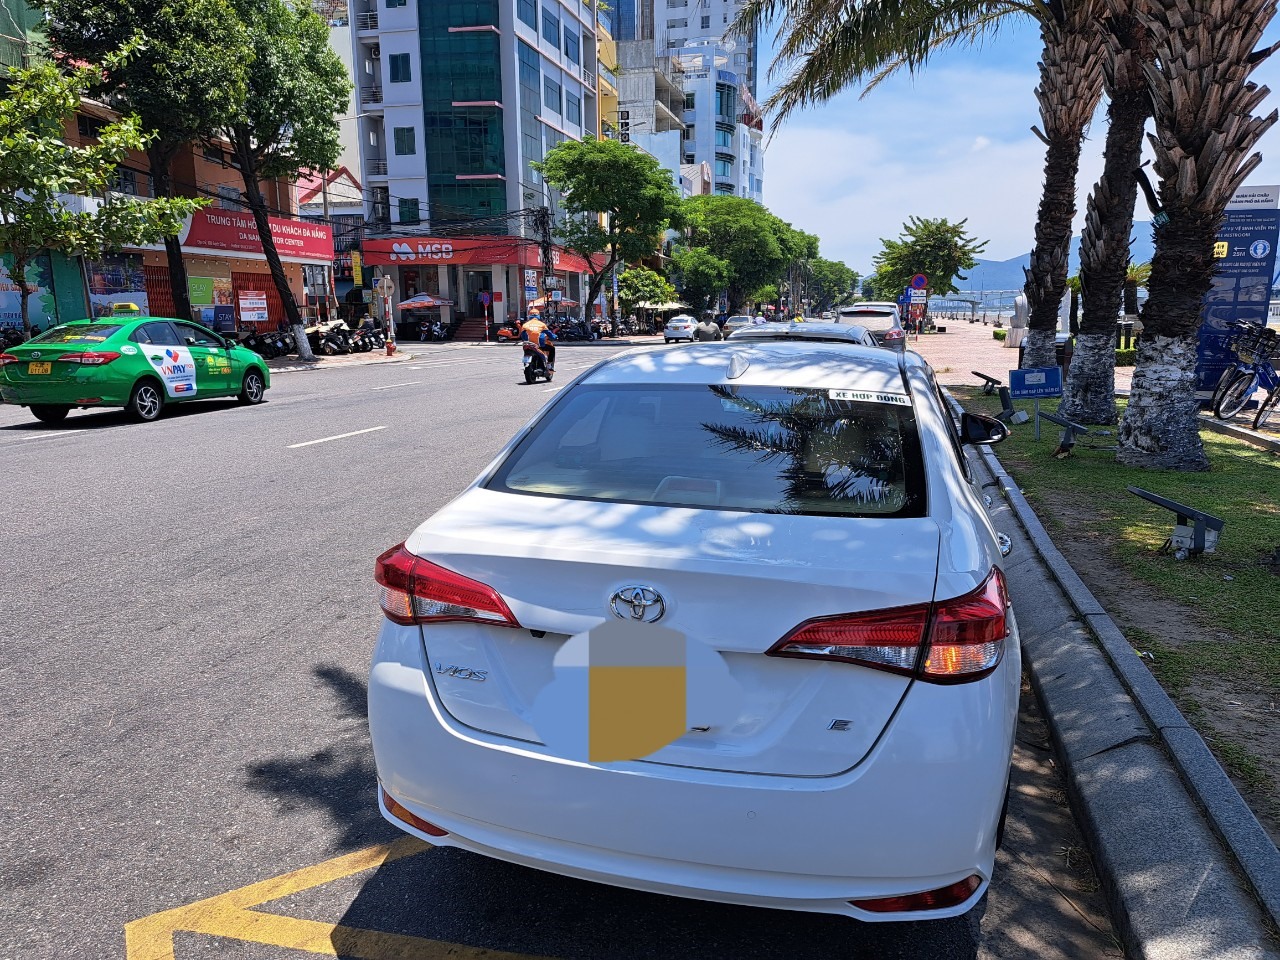 Các tài xế taxi thường đậu xe trước cổng chợ Hàn rồi bật đèn xi nhan dù ở đây có biển cấm dừng đỗ xe quá 5 phút. Ảnh: Nguyễn Linh